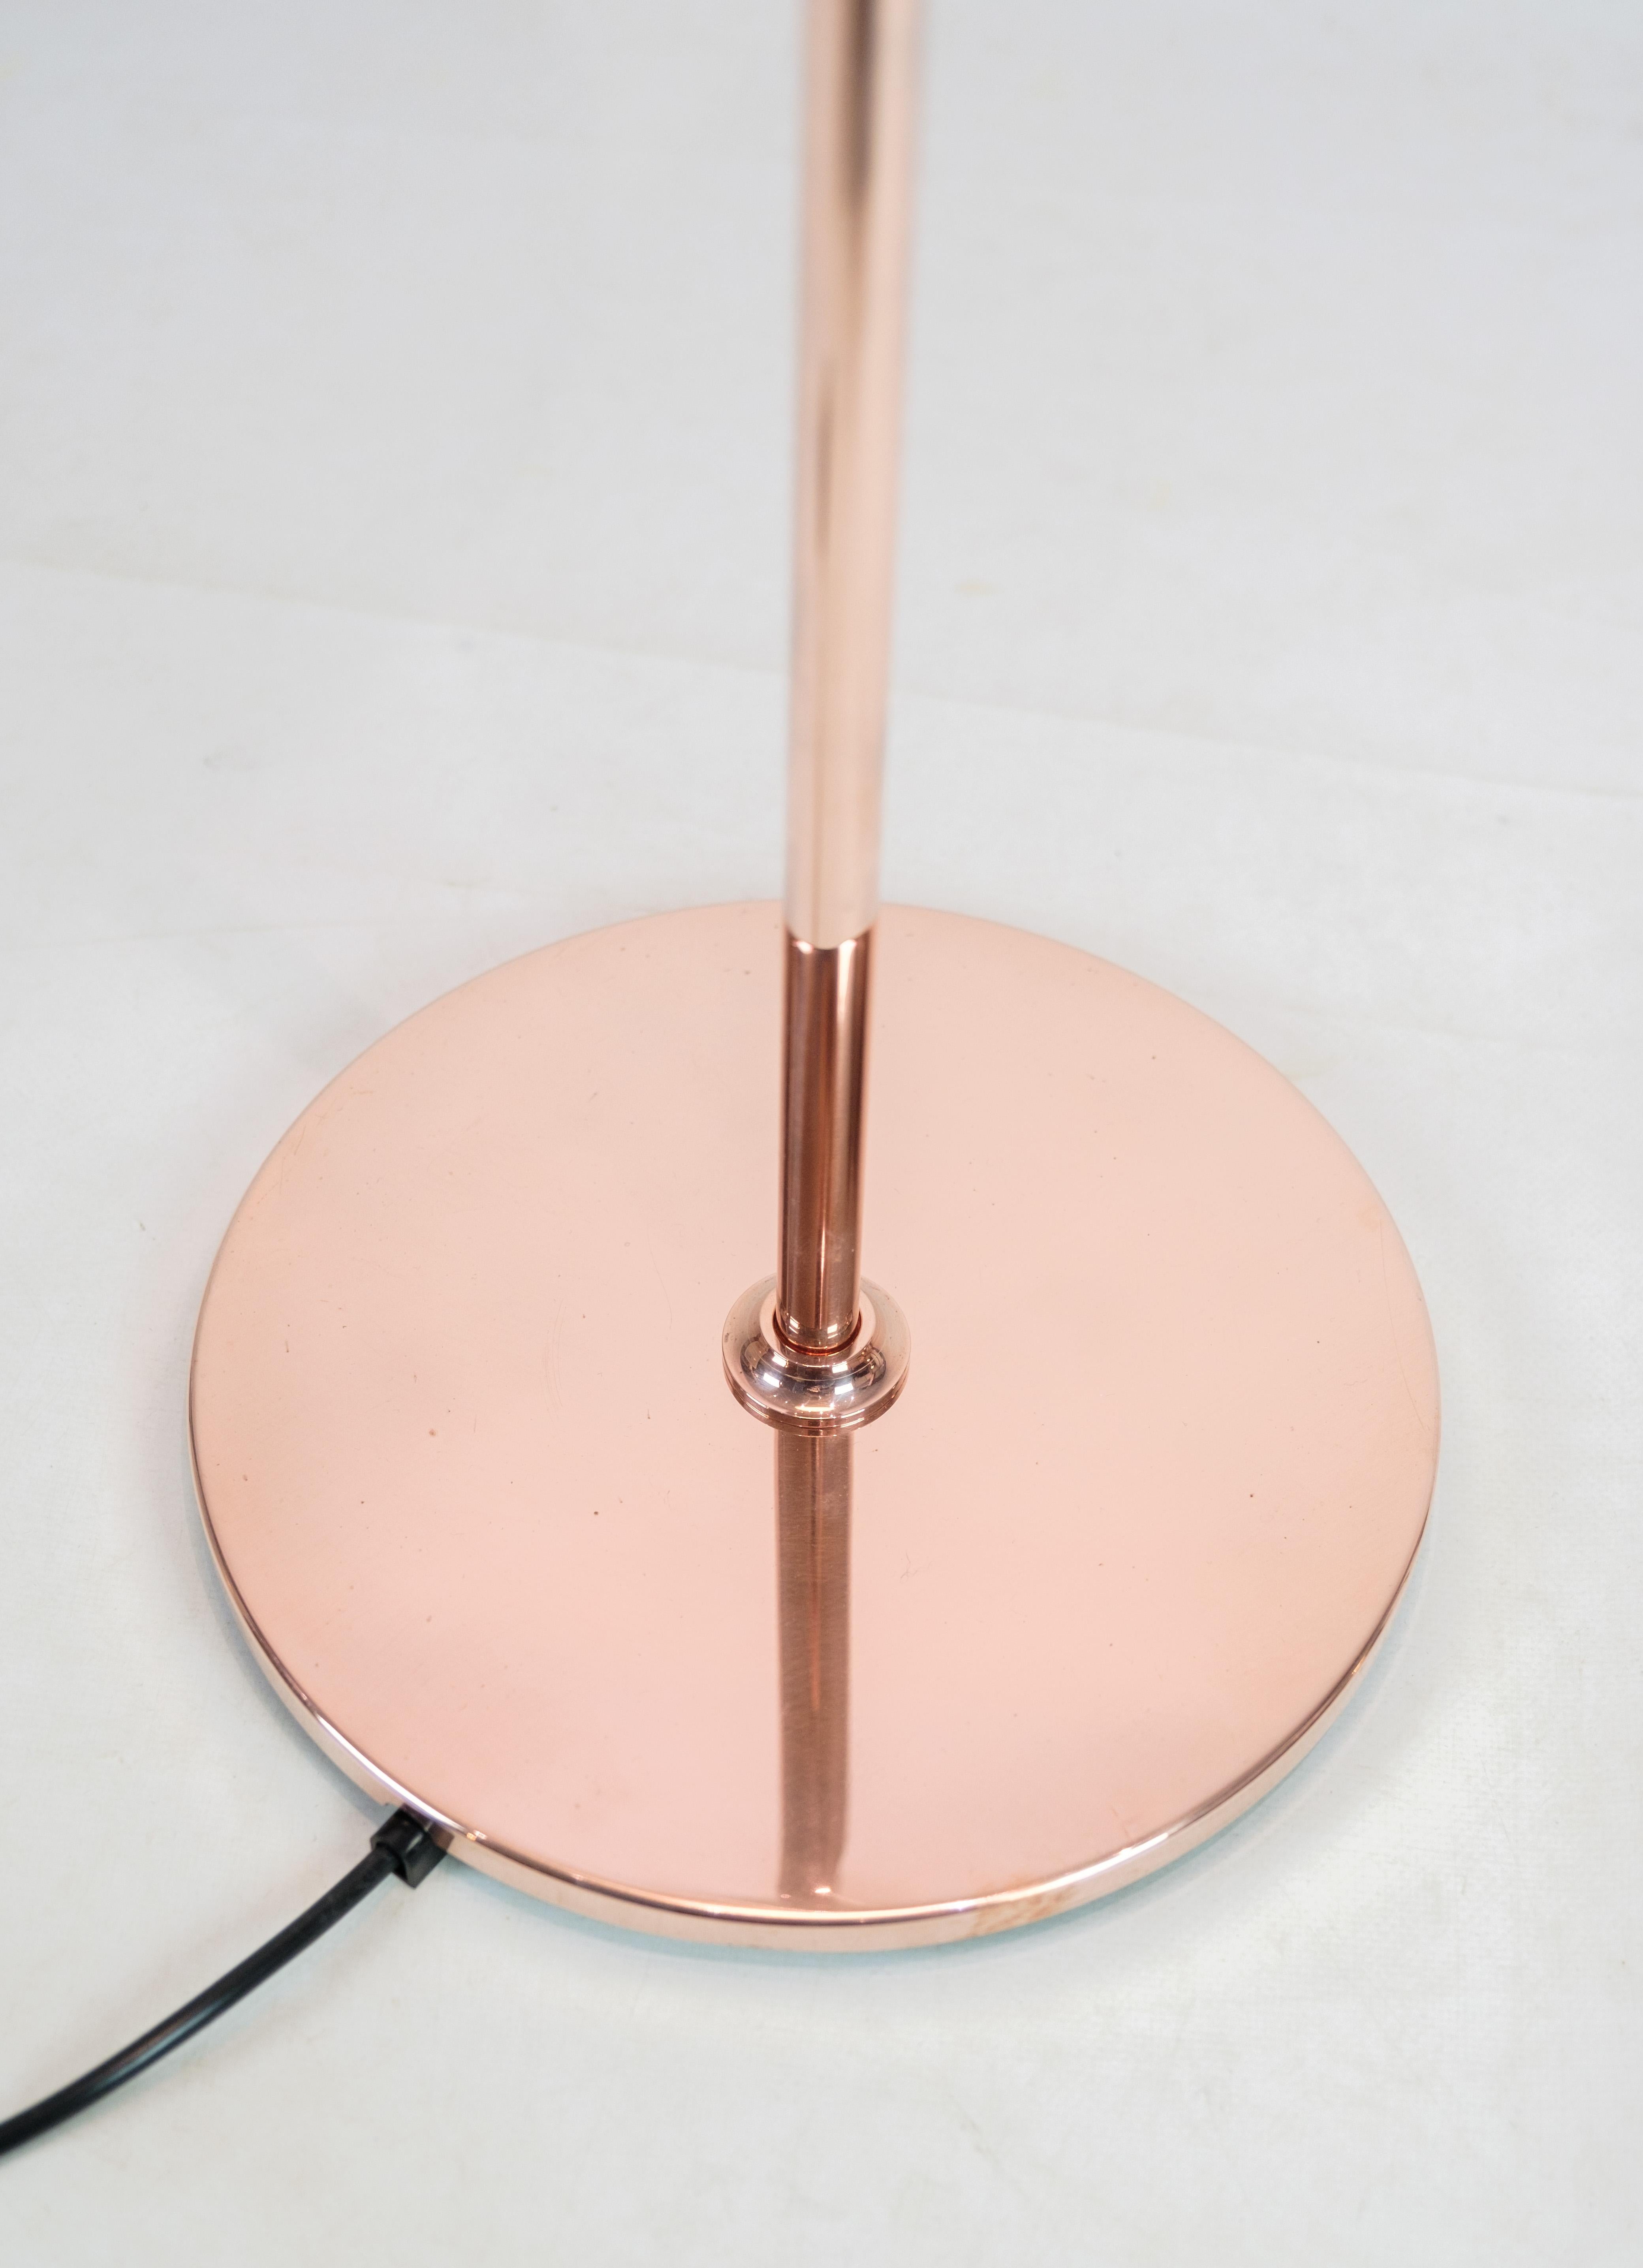 PH Stehleuchte, Modell PH3½-2½, limitierte Auflage in Kupfer, entworfen von Poul Henningsen und hergestellt von Louis Poulsen. Die Leuchte hat einen oberen Schirm aus Kupfer und zwei untere Schirme aus weißem Opalglas. Die Lampe wurde nur zwischen